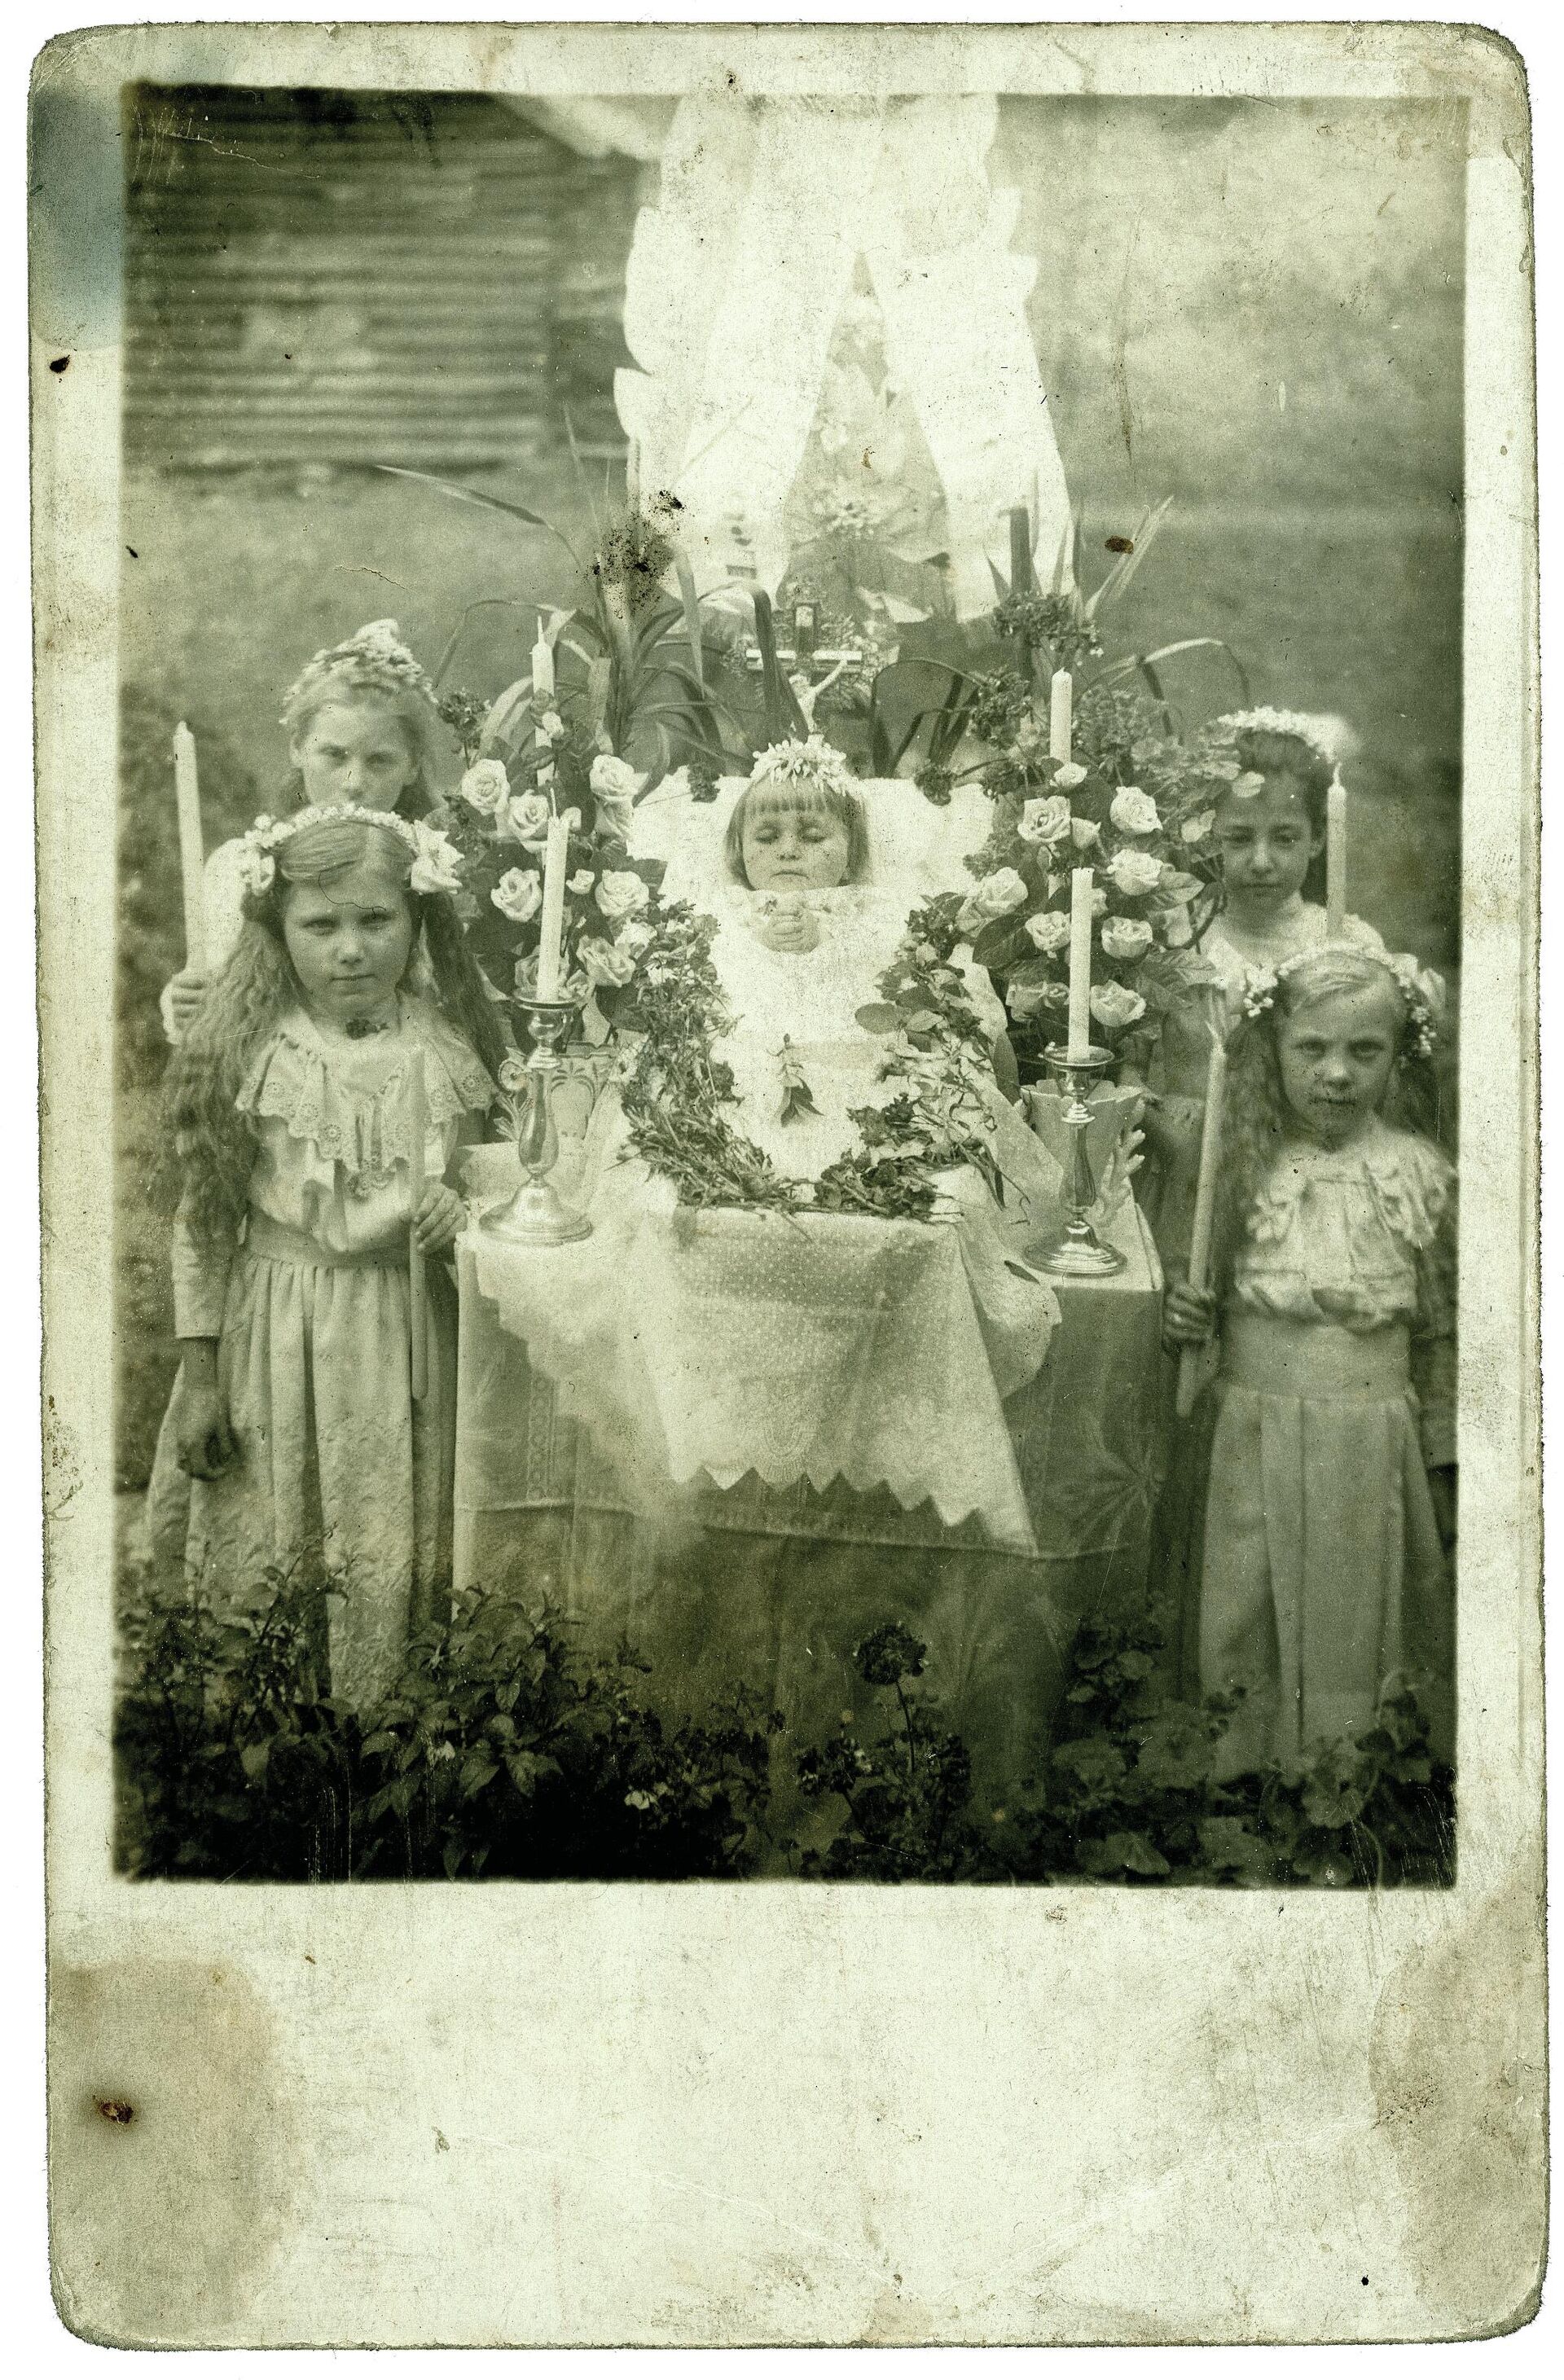 Pequeña difunta acompañada por otras cuatro niñas - Sputnik Mundo, 1920, 02.06.2021